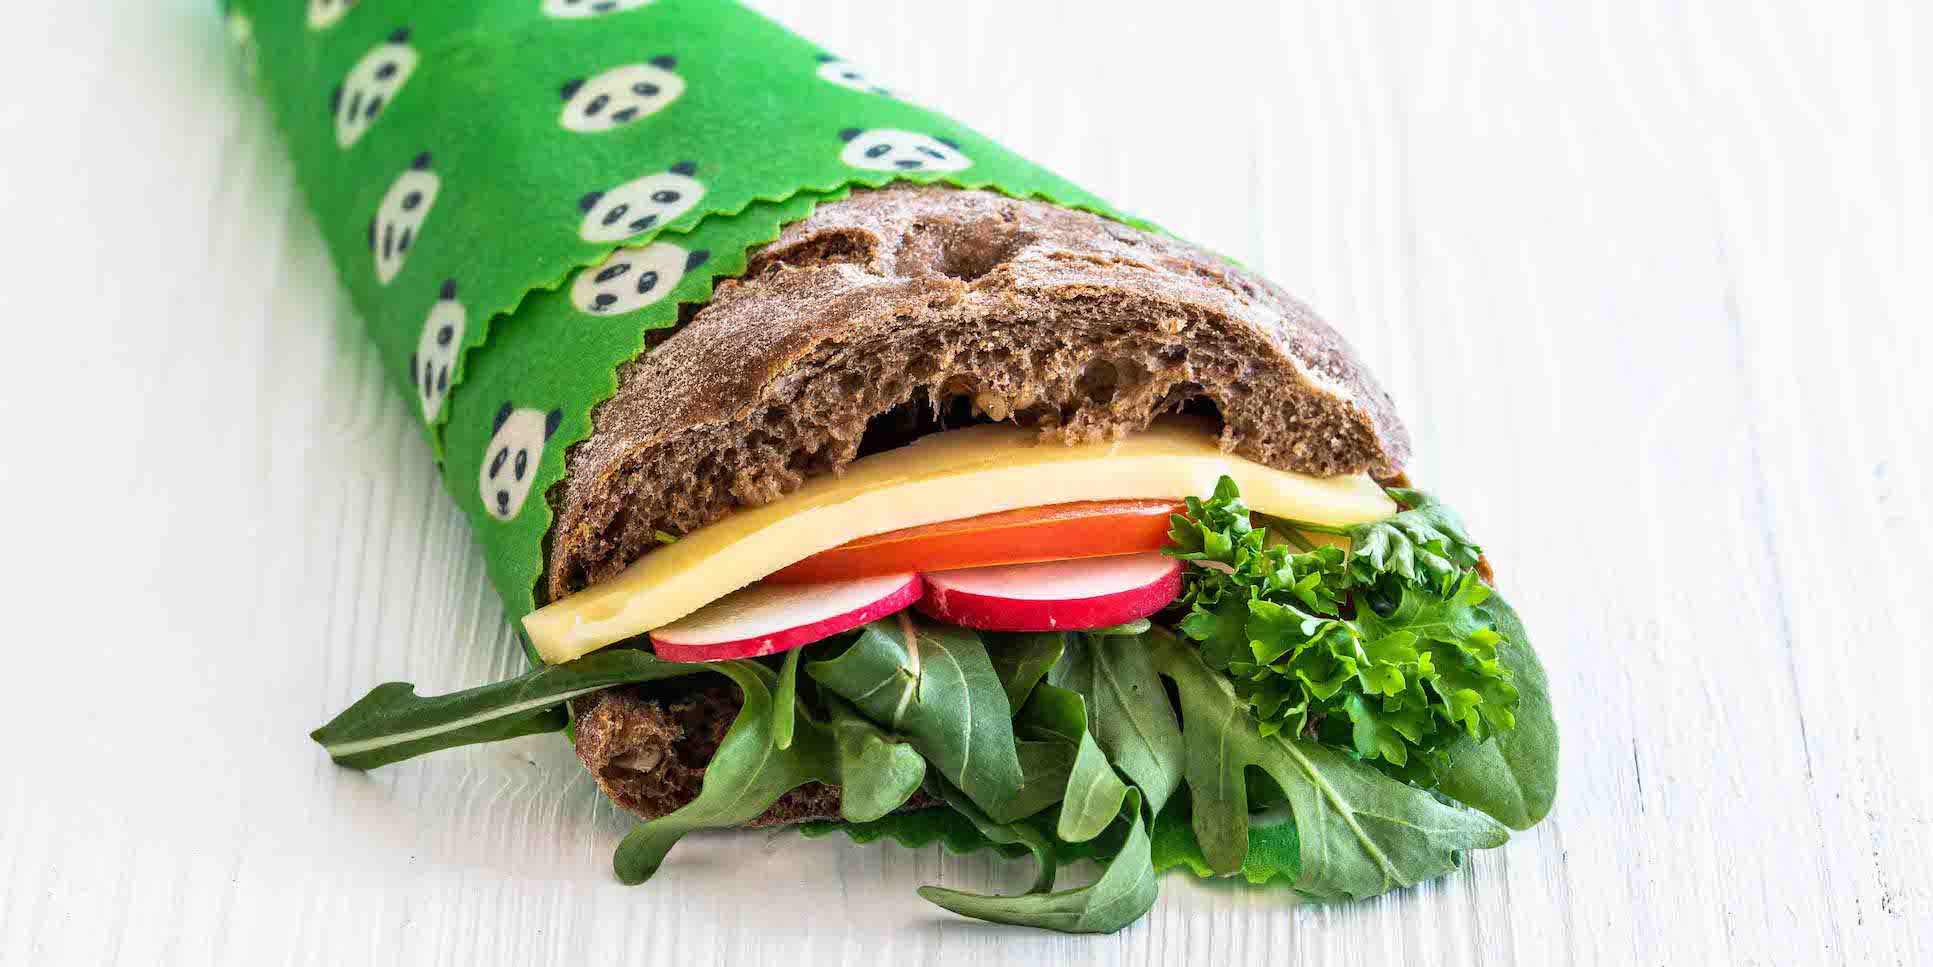 Nahaufnahme von einem dunklen Vollkorn-Sandwich belegt mit Salat, Käse, Radieschen und Rucula. Das Brot ist eingewickelt in grünem Bienenwachspapier mit Pandas darauf